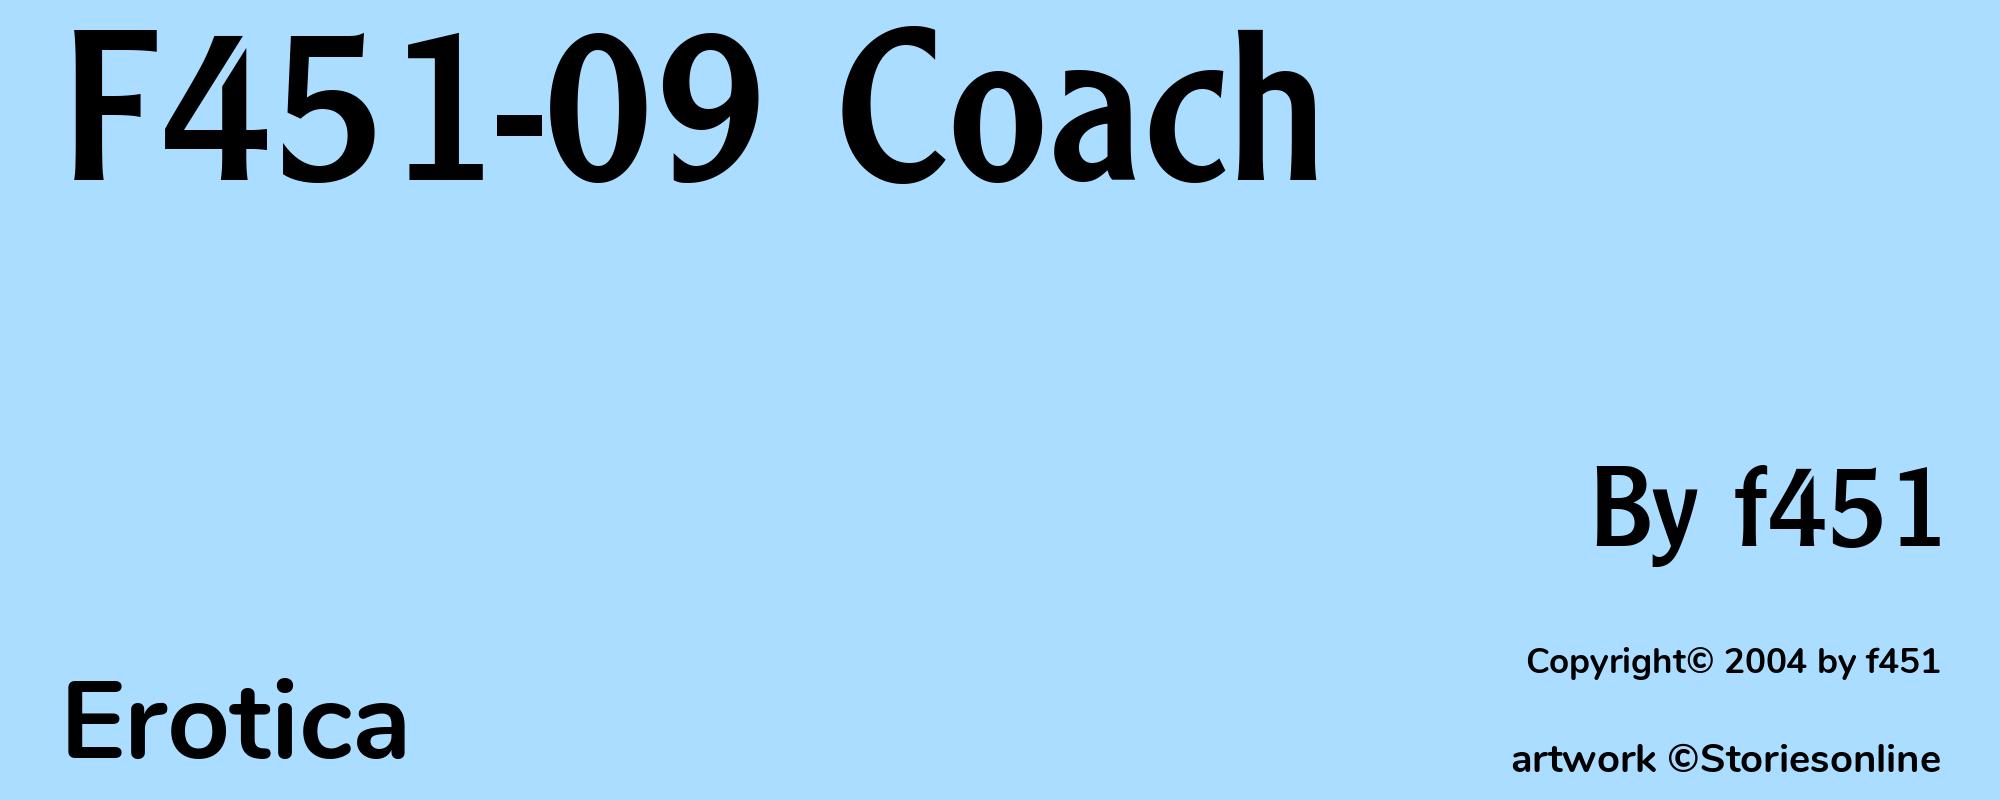 F451-09 Coach - Cover